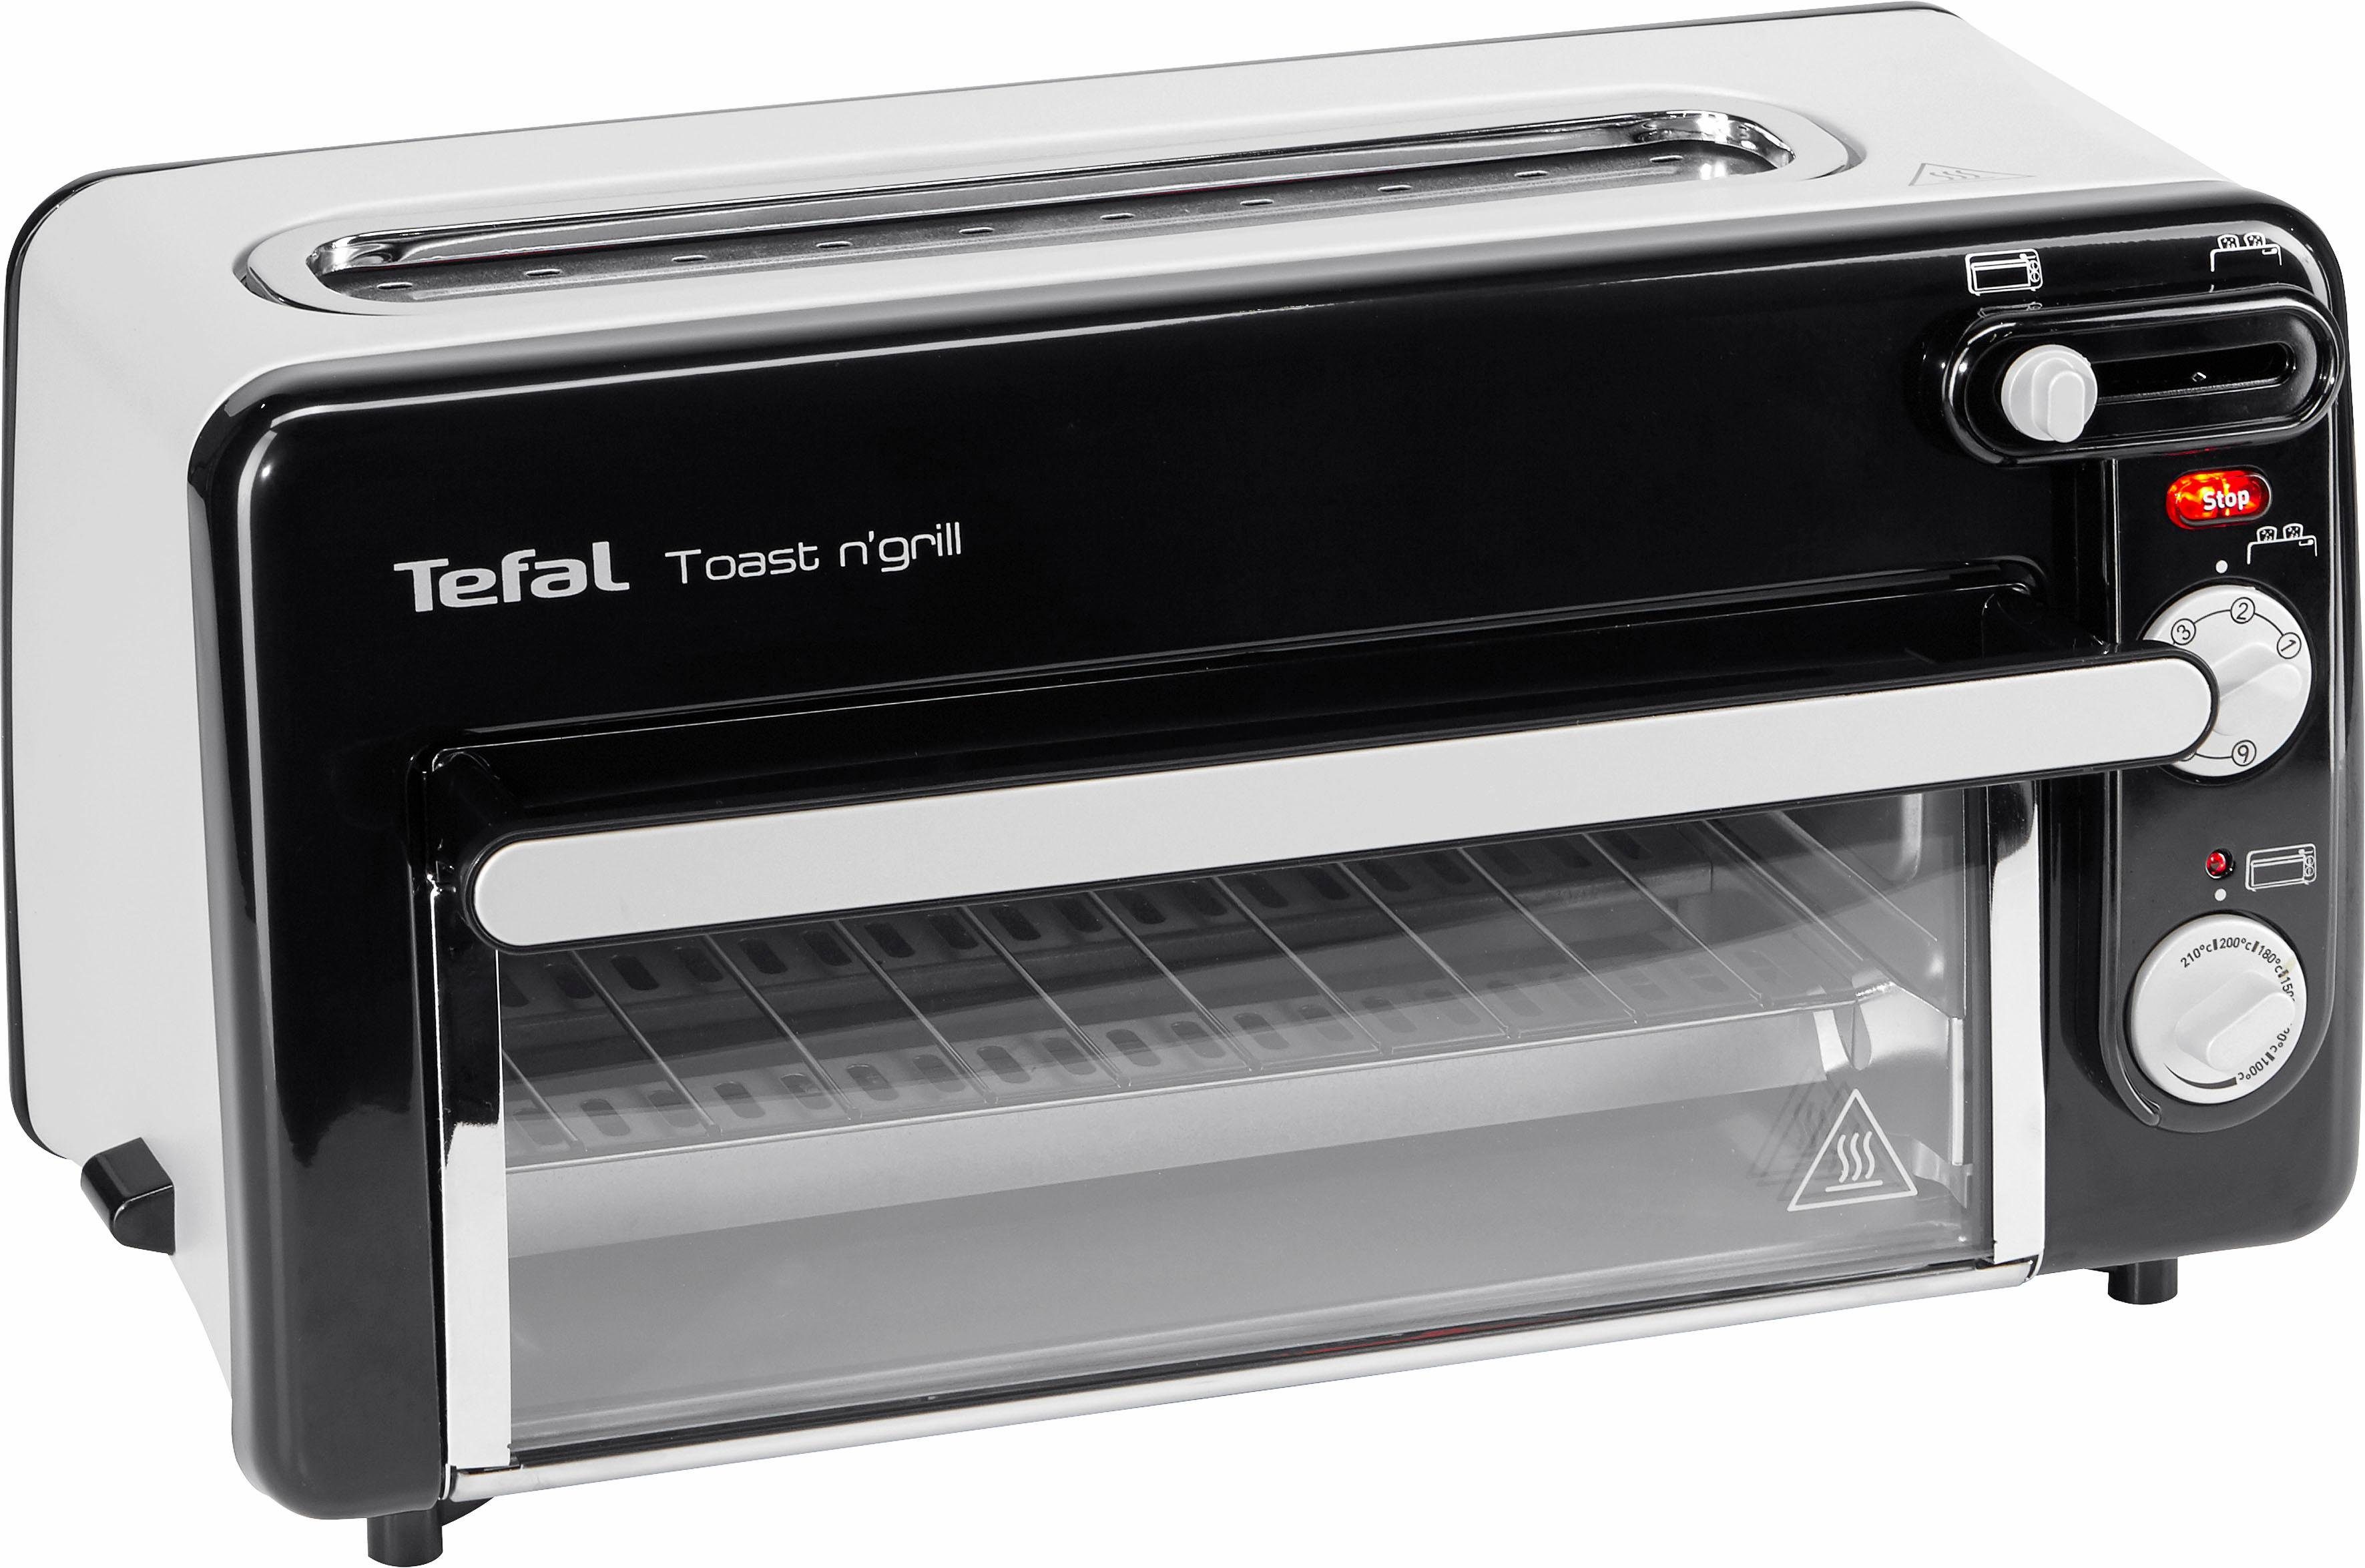 Tefal Minibackofen TL6008 Toast n' Grill, sehr energieeffizient und  schnell, 1300 Watt